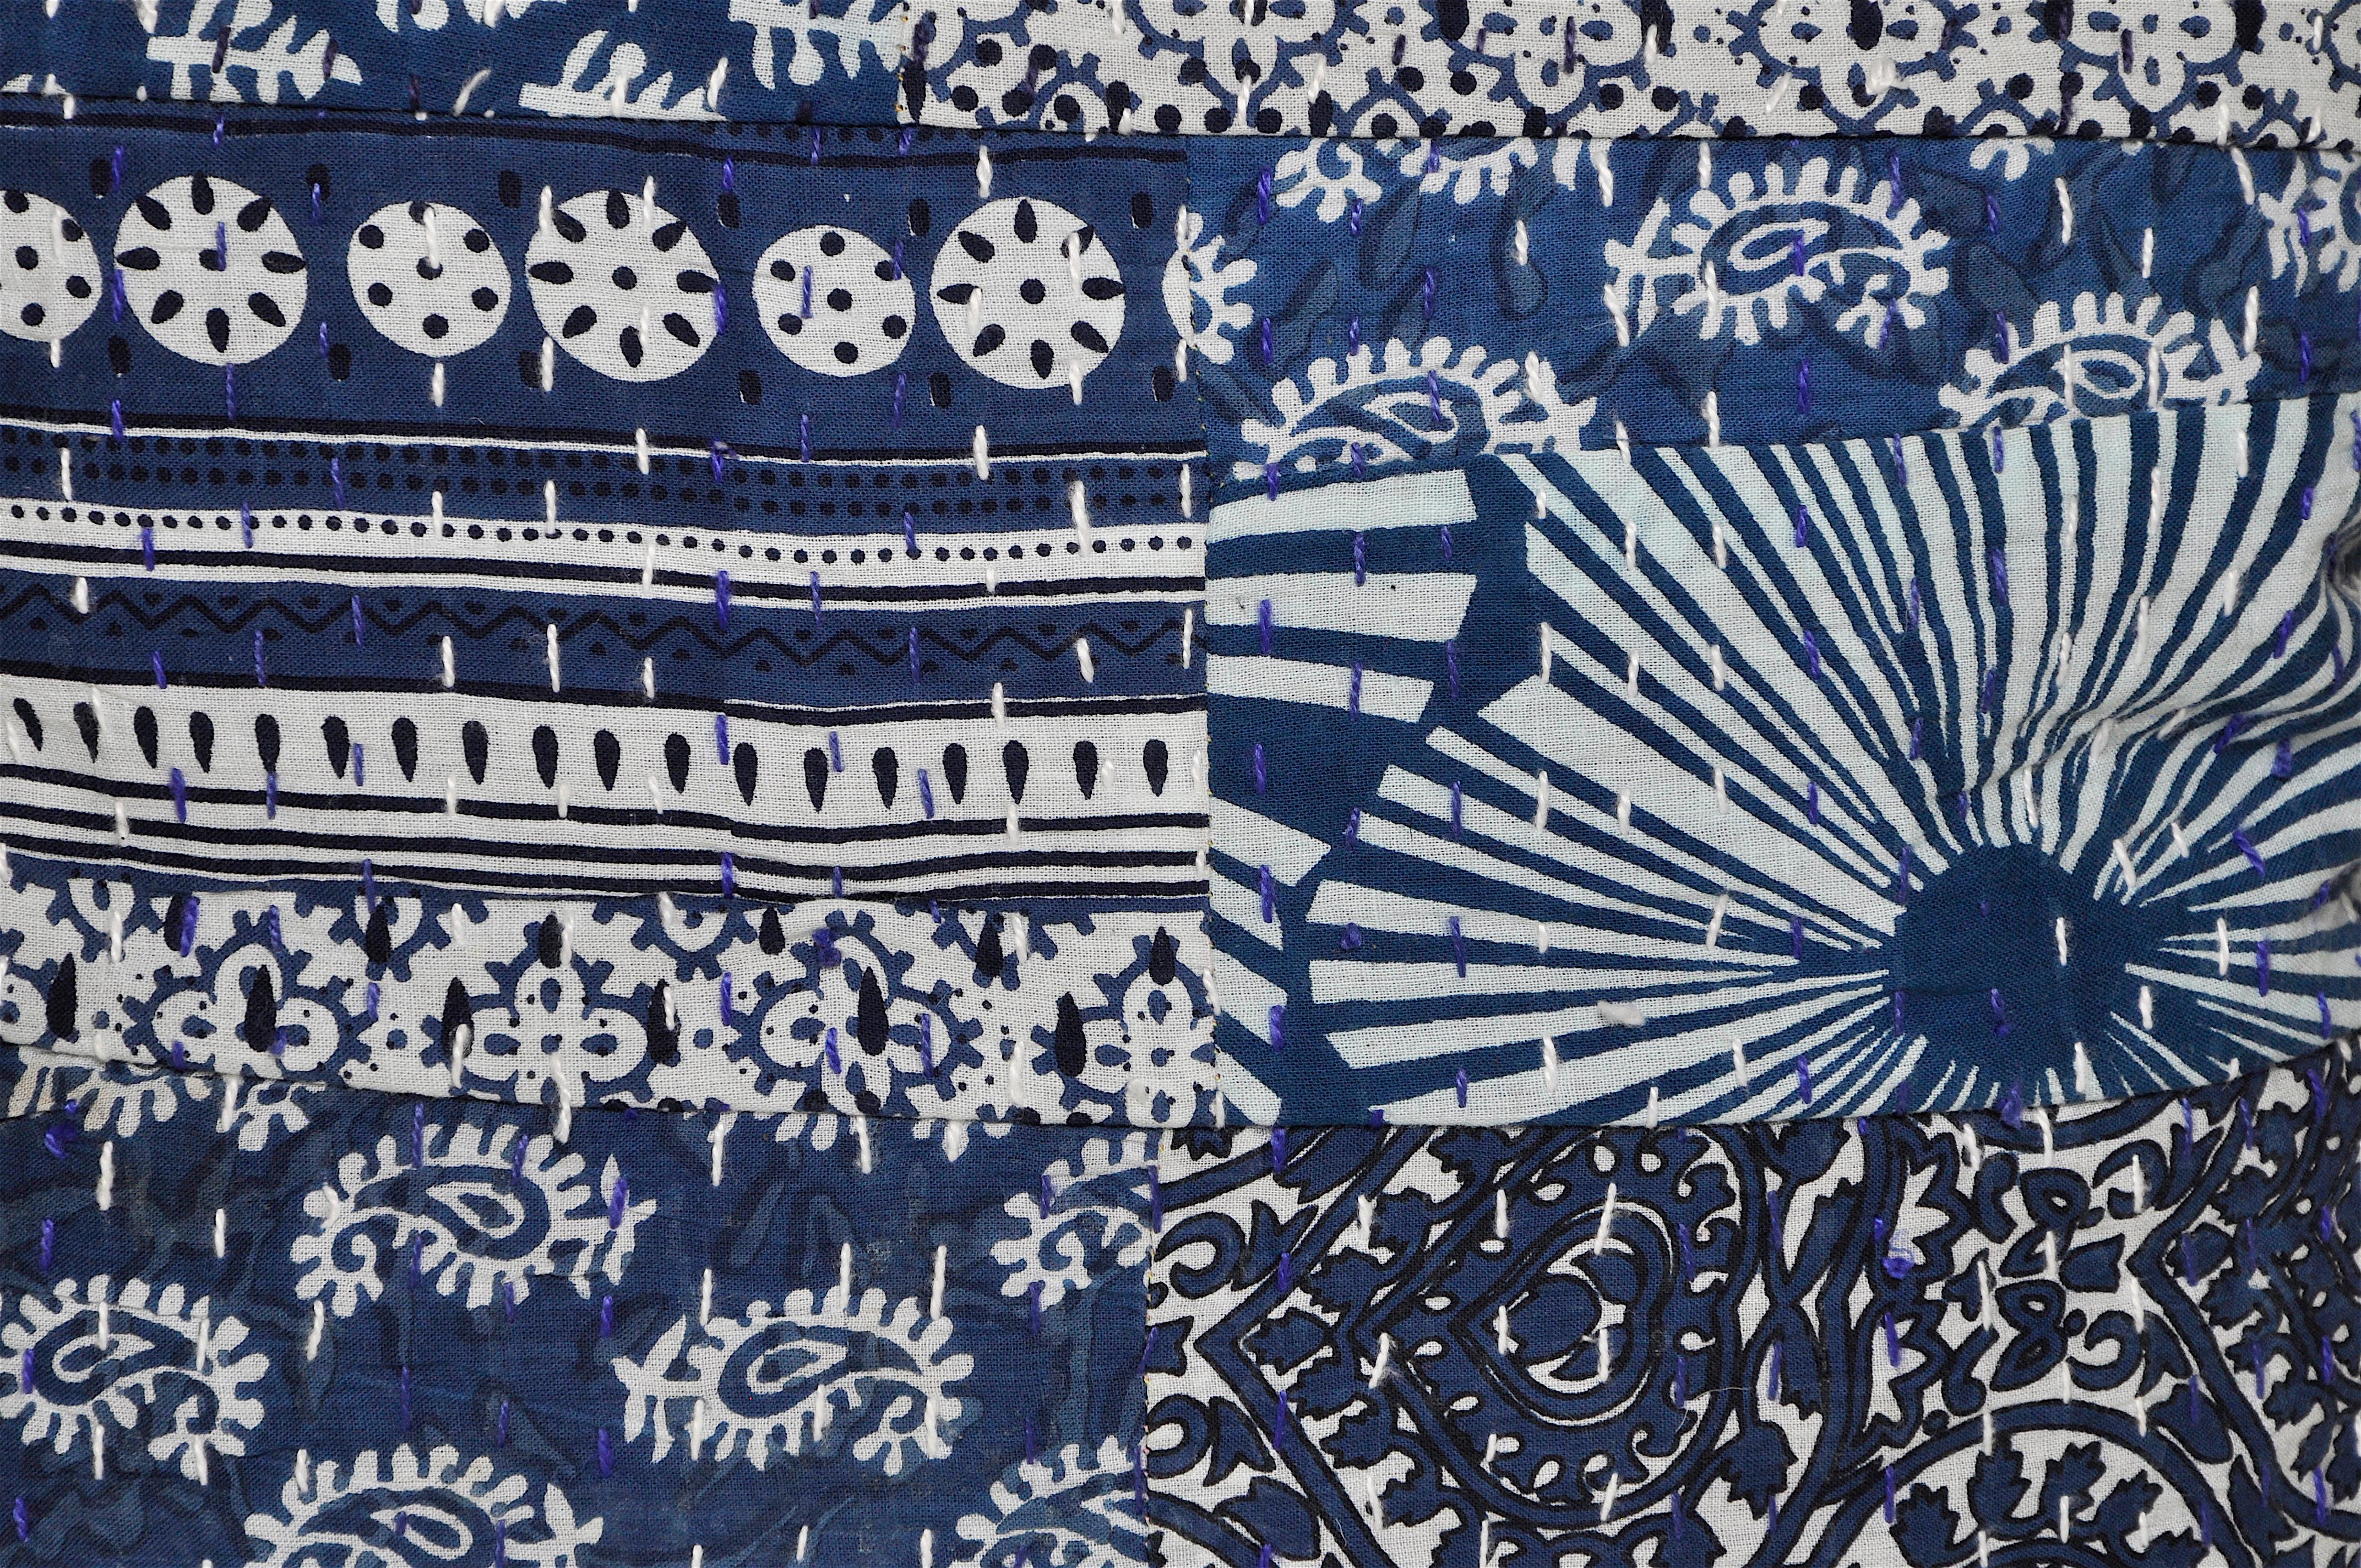 Vieux patchwork indien batik Kantha indigo avec coussin en lin irlandais

Bel ensemble d'oreillers (coussins) ethniques. Coton indigo indien vintage teint à la main avec un motif traditionnel et fastidieux d'impression en blocs de bois, doublé de